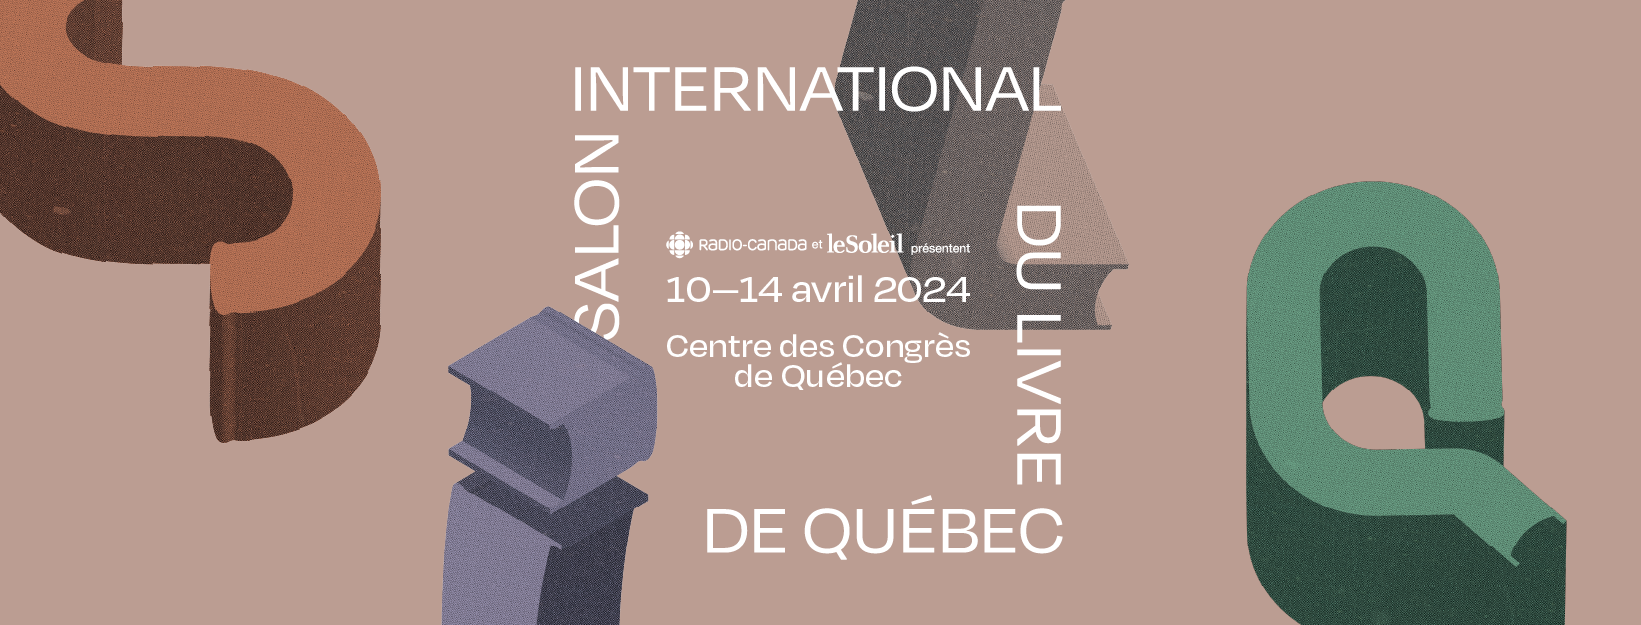 Le rendez-vous littéraire de l’année à Québec!